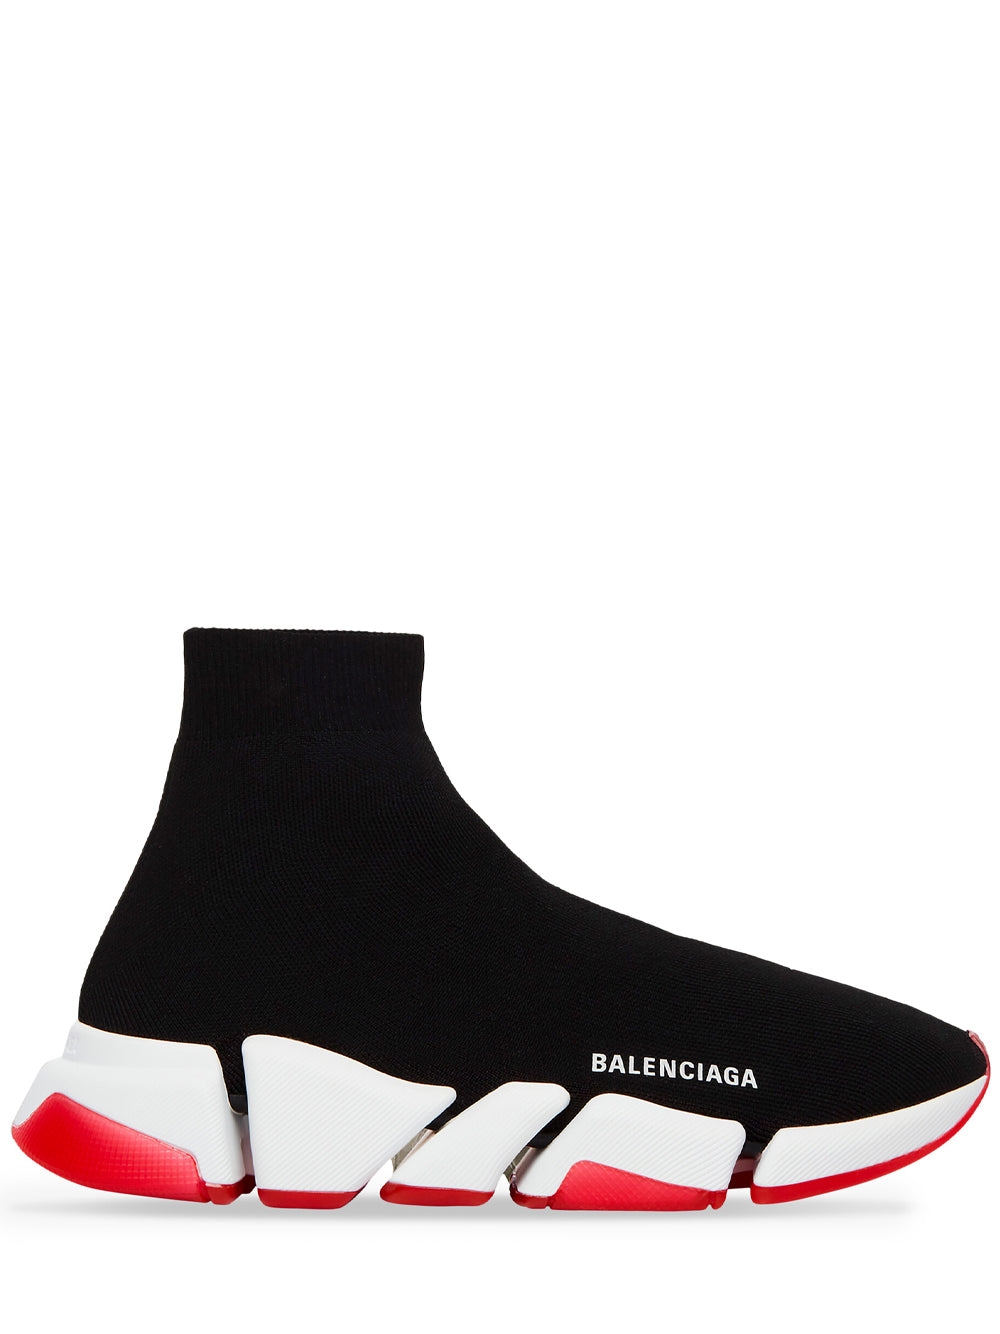 Balenciaga RedBlackYellow Track Sneaker  Drops  Hypebeast